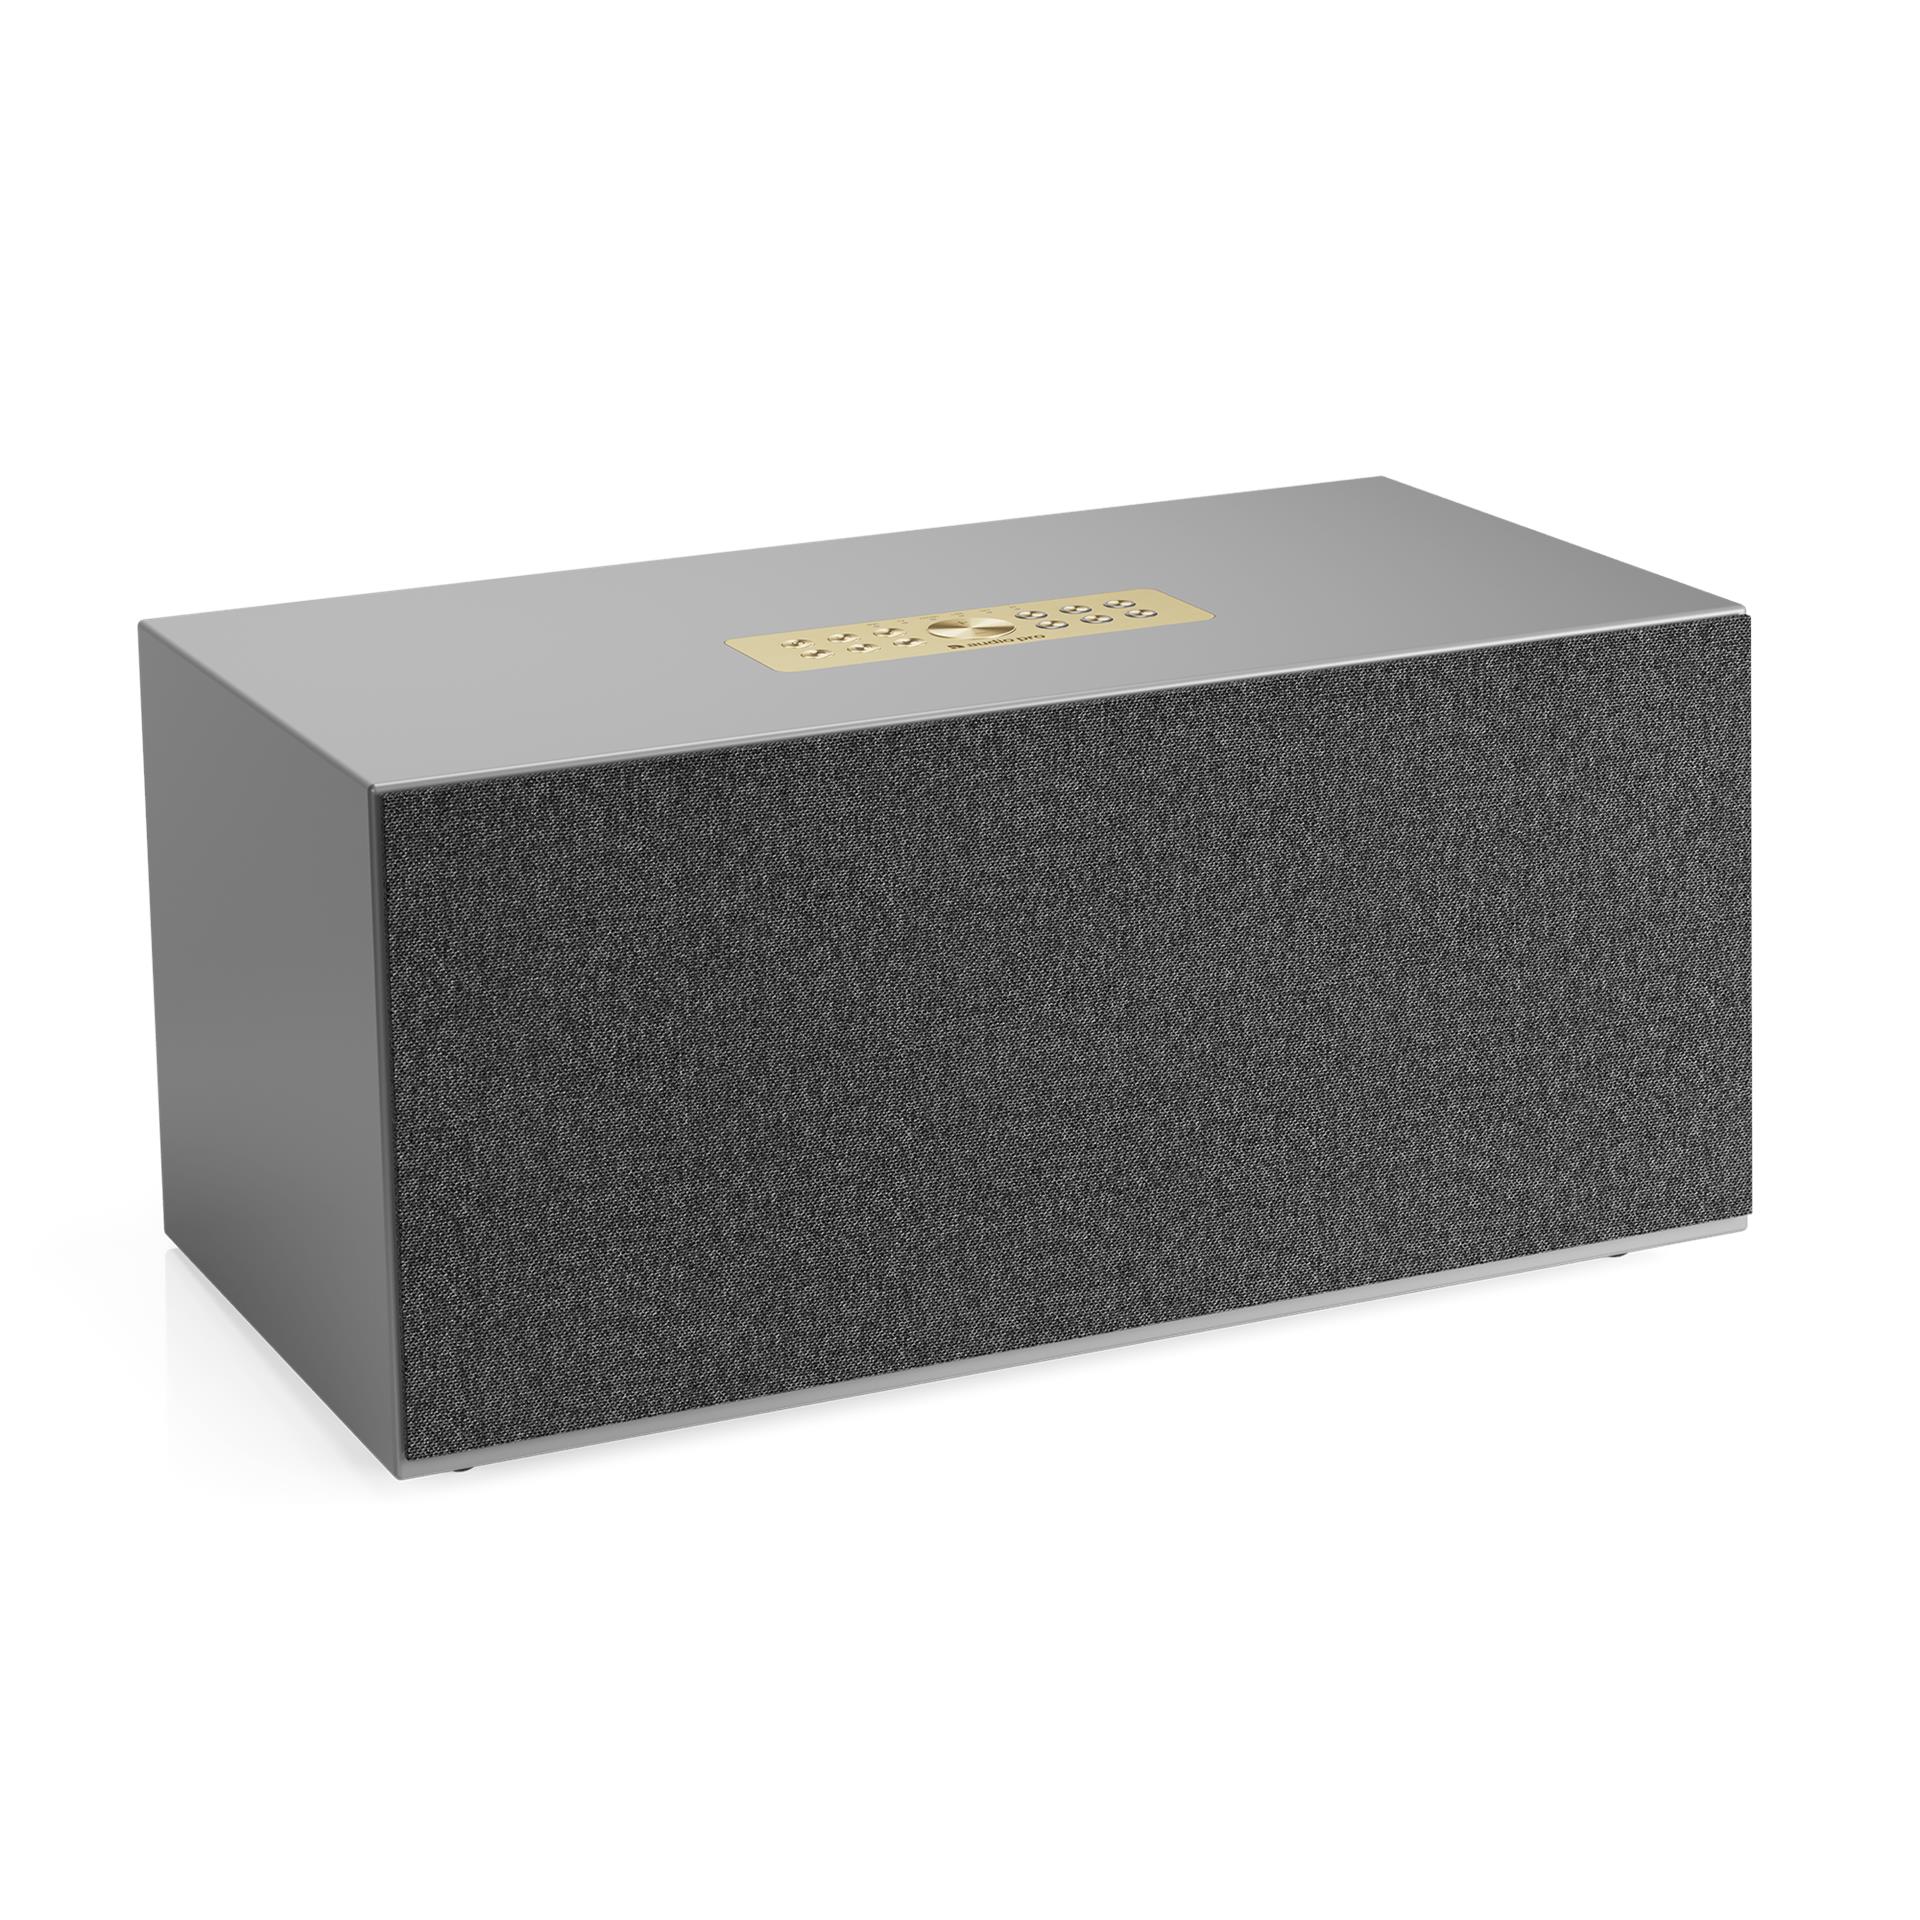 Audio Pro C20 multiroom speaker, Grey